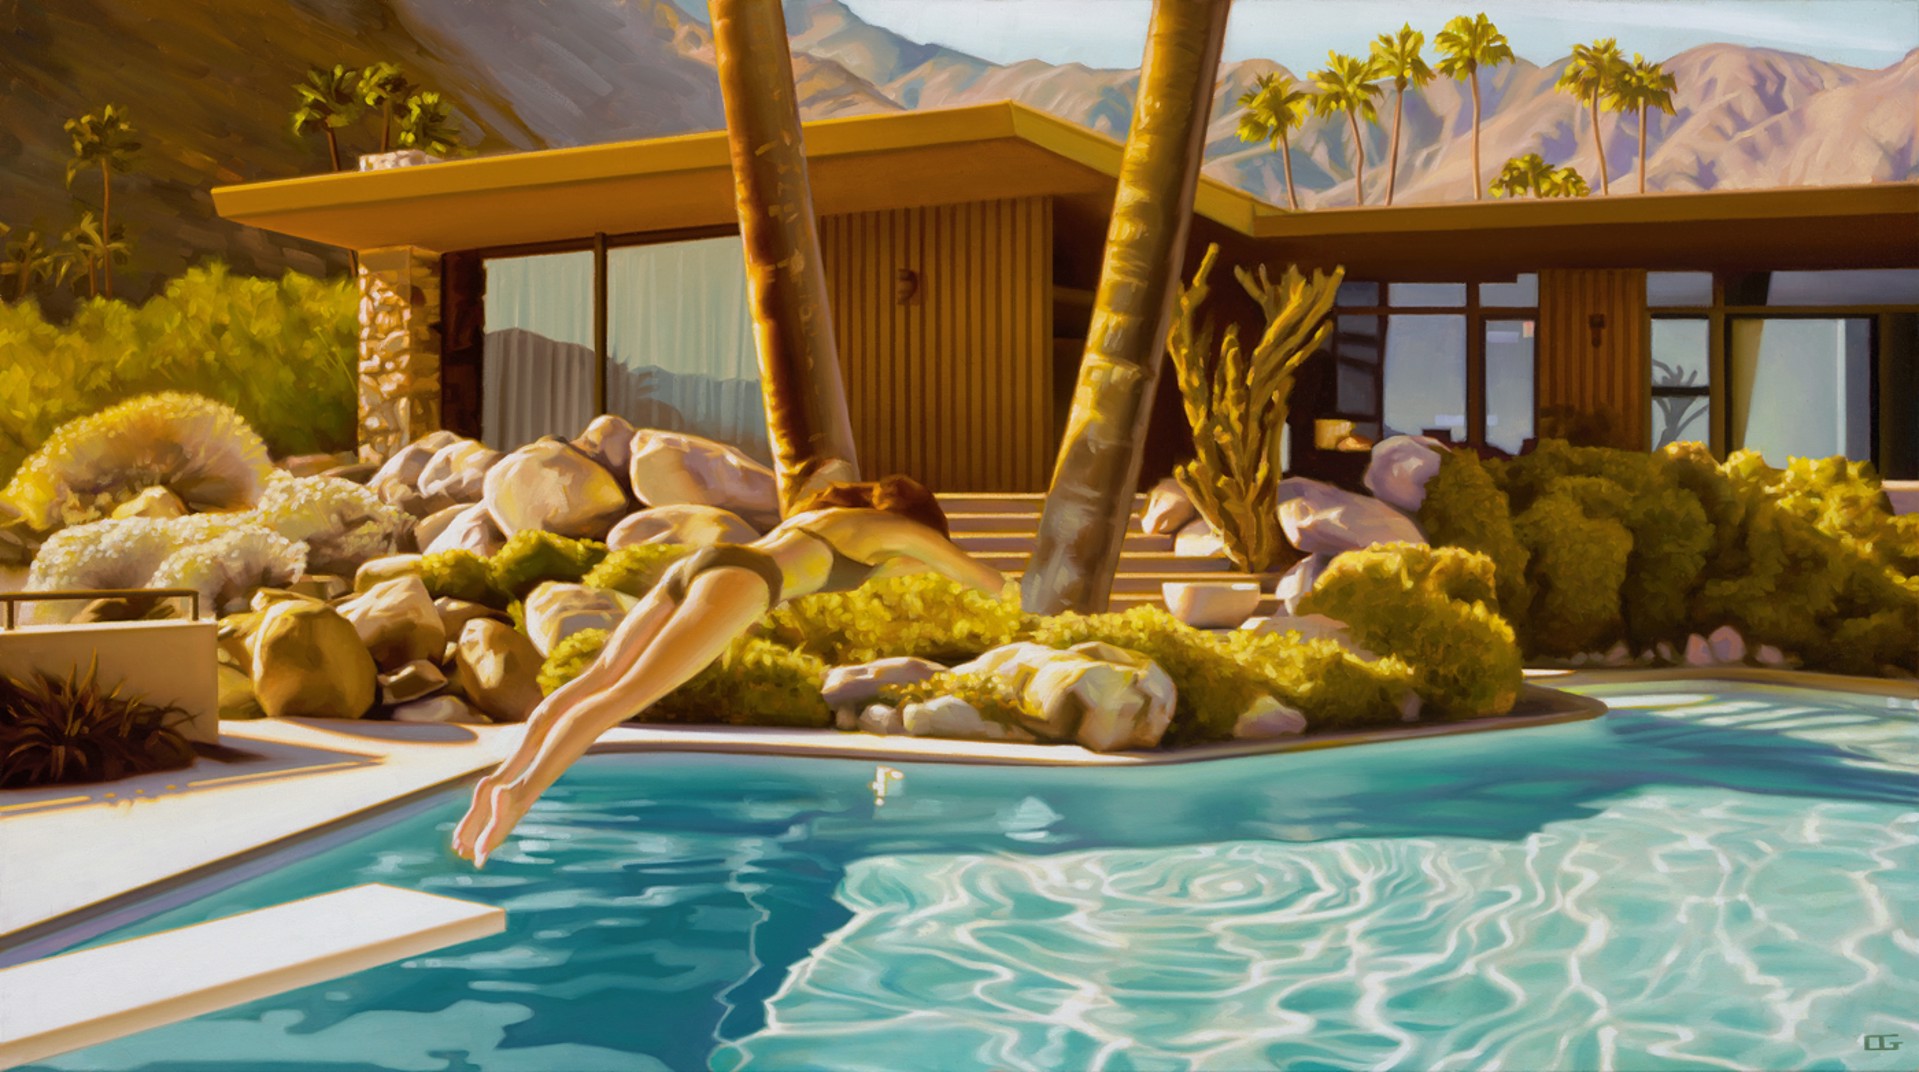 Hot Springs Fling by Carrie Graber